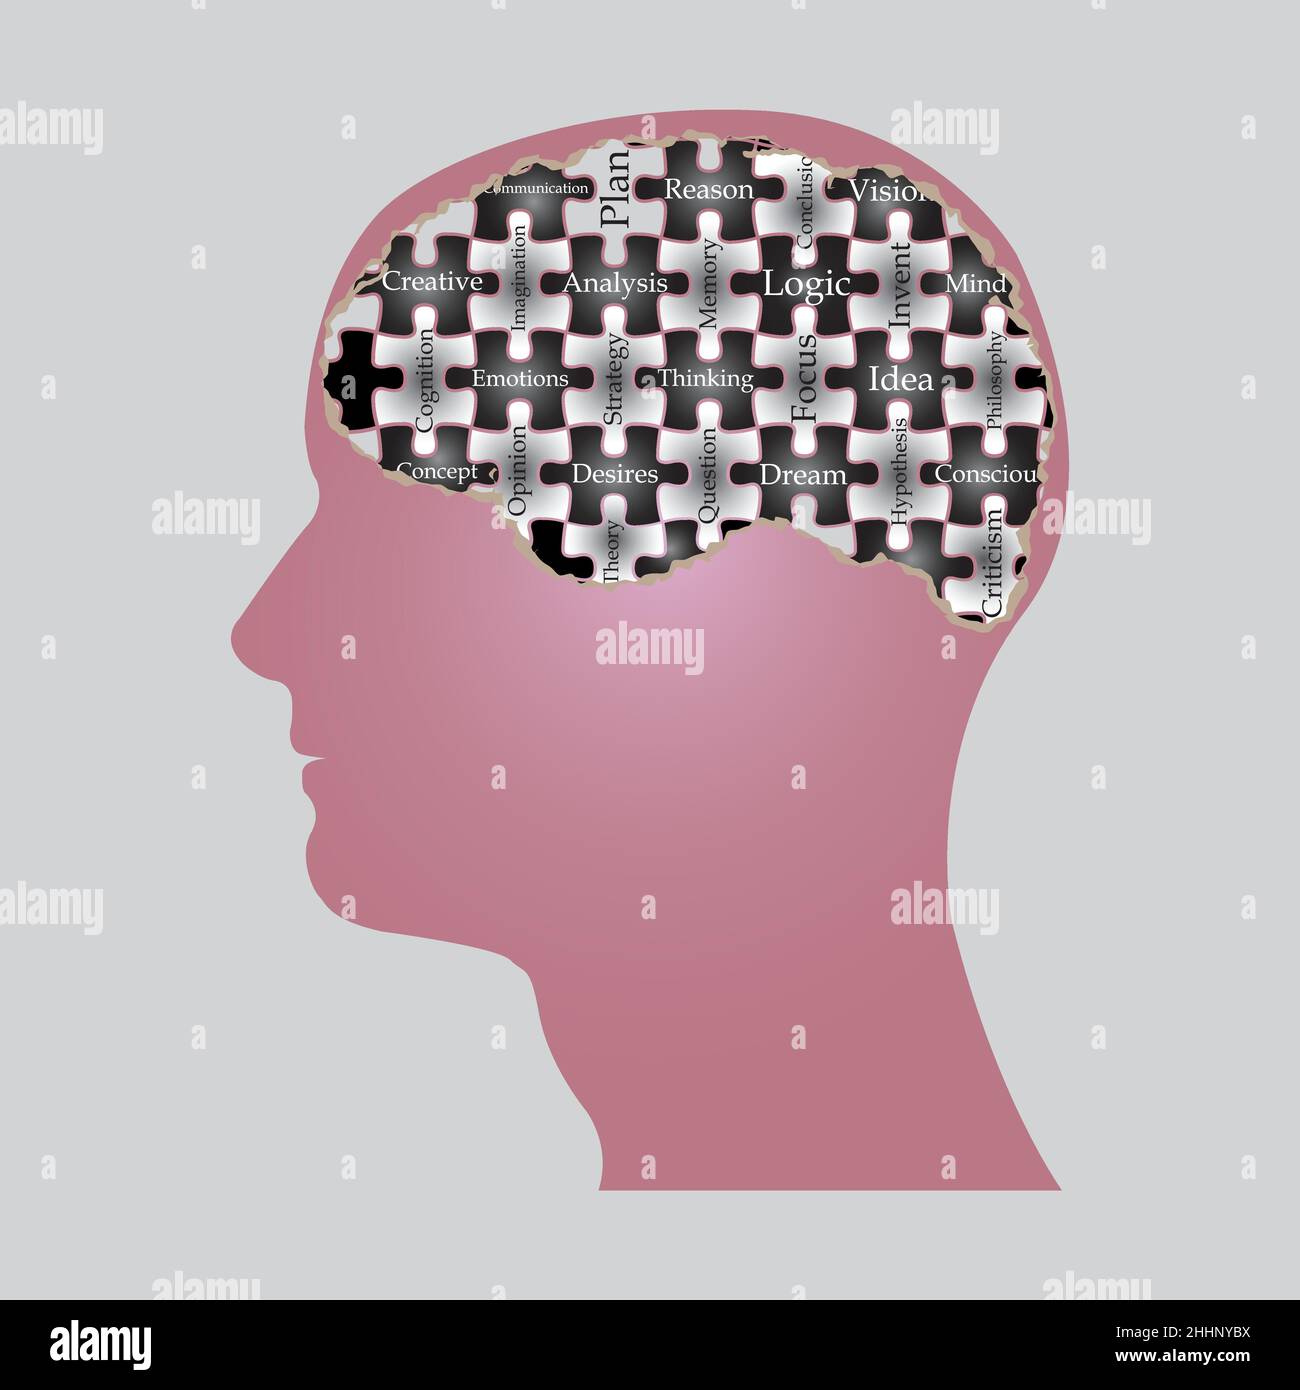 Menschliches Gehirn als Puzzleteile mit mentalen Merkmalen, die die Person erschaffen. Vektorgrafik Stock Vektor